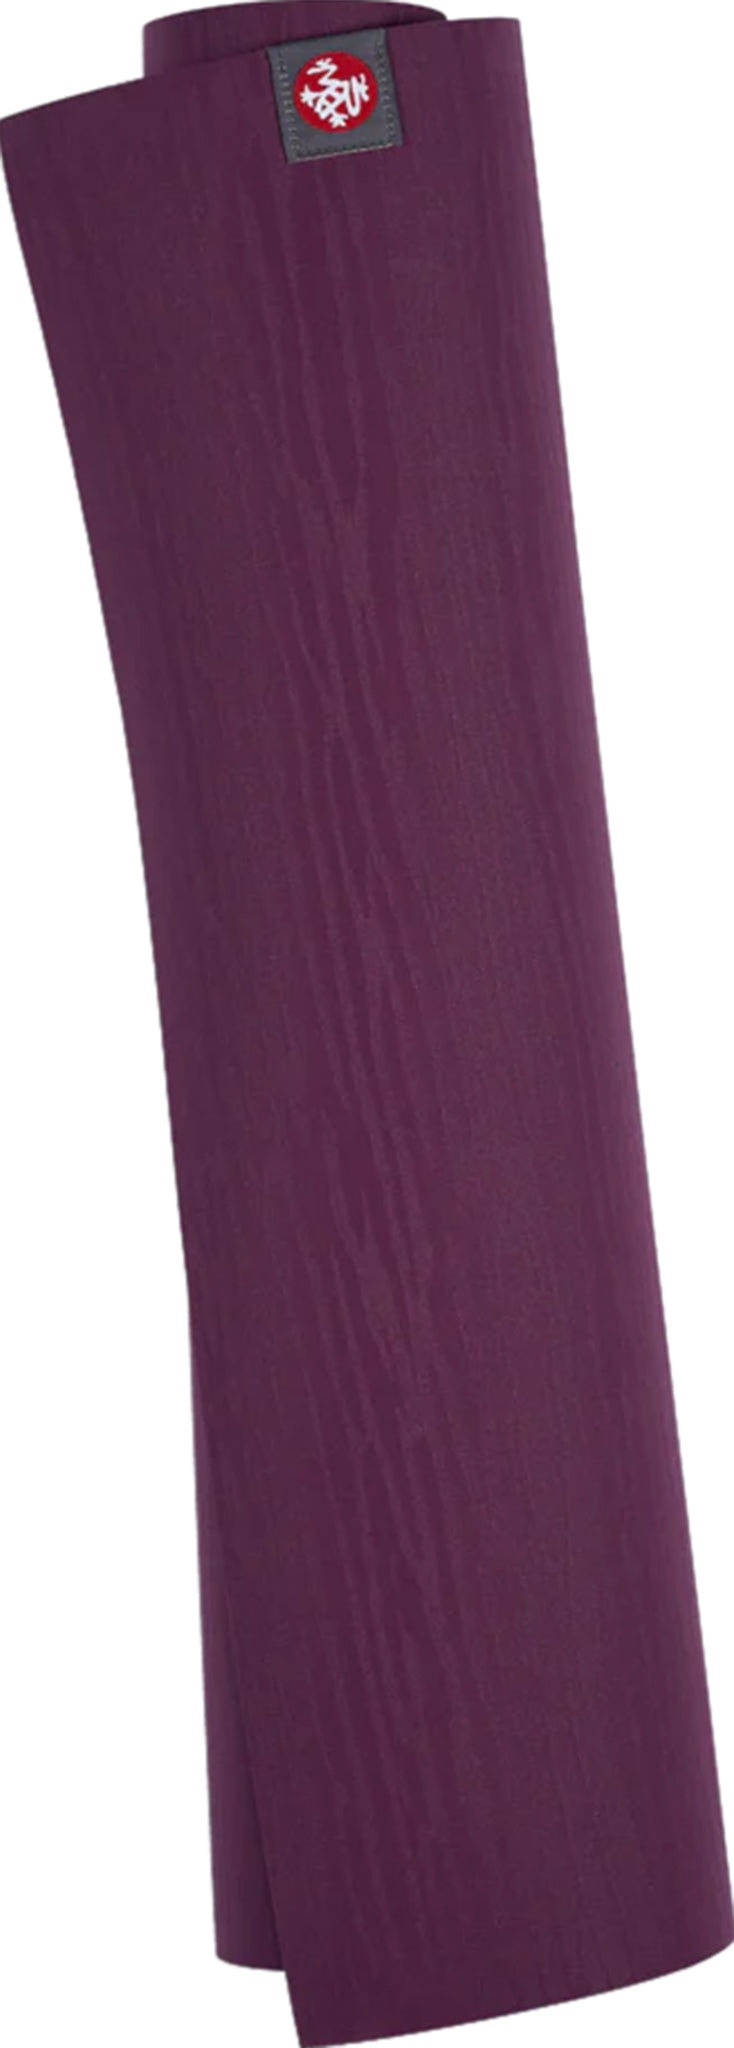 Manduka EKO Lite Yoga Mat - for Women and Men, Lightweight, Durable, Non  Slip Grip, 4mm Thick, 71 Inch, Mats -  Canada